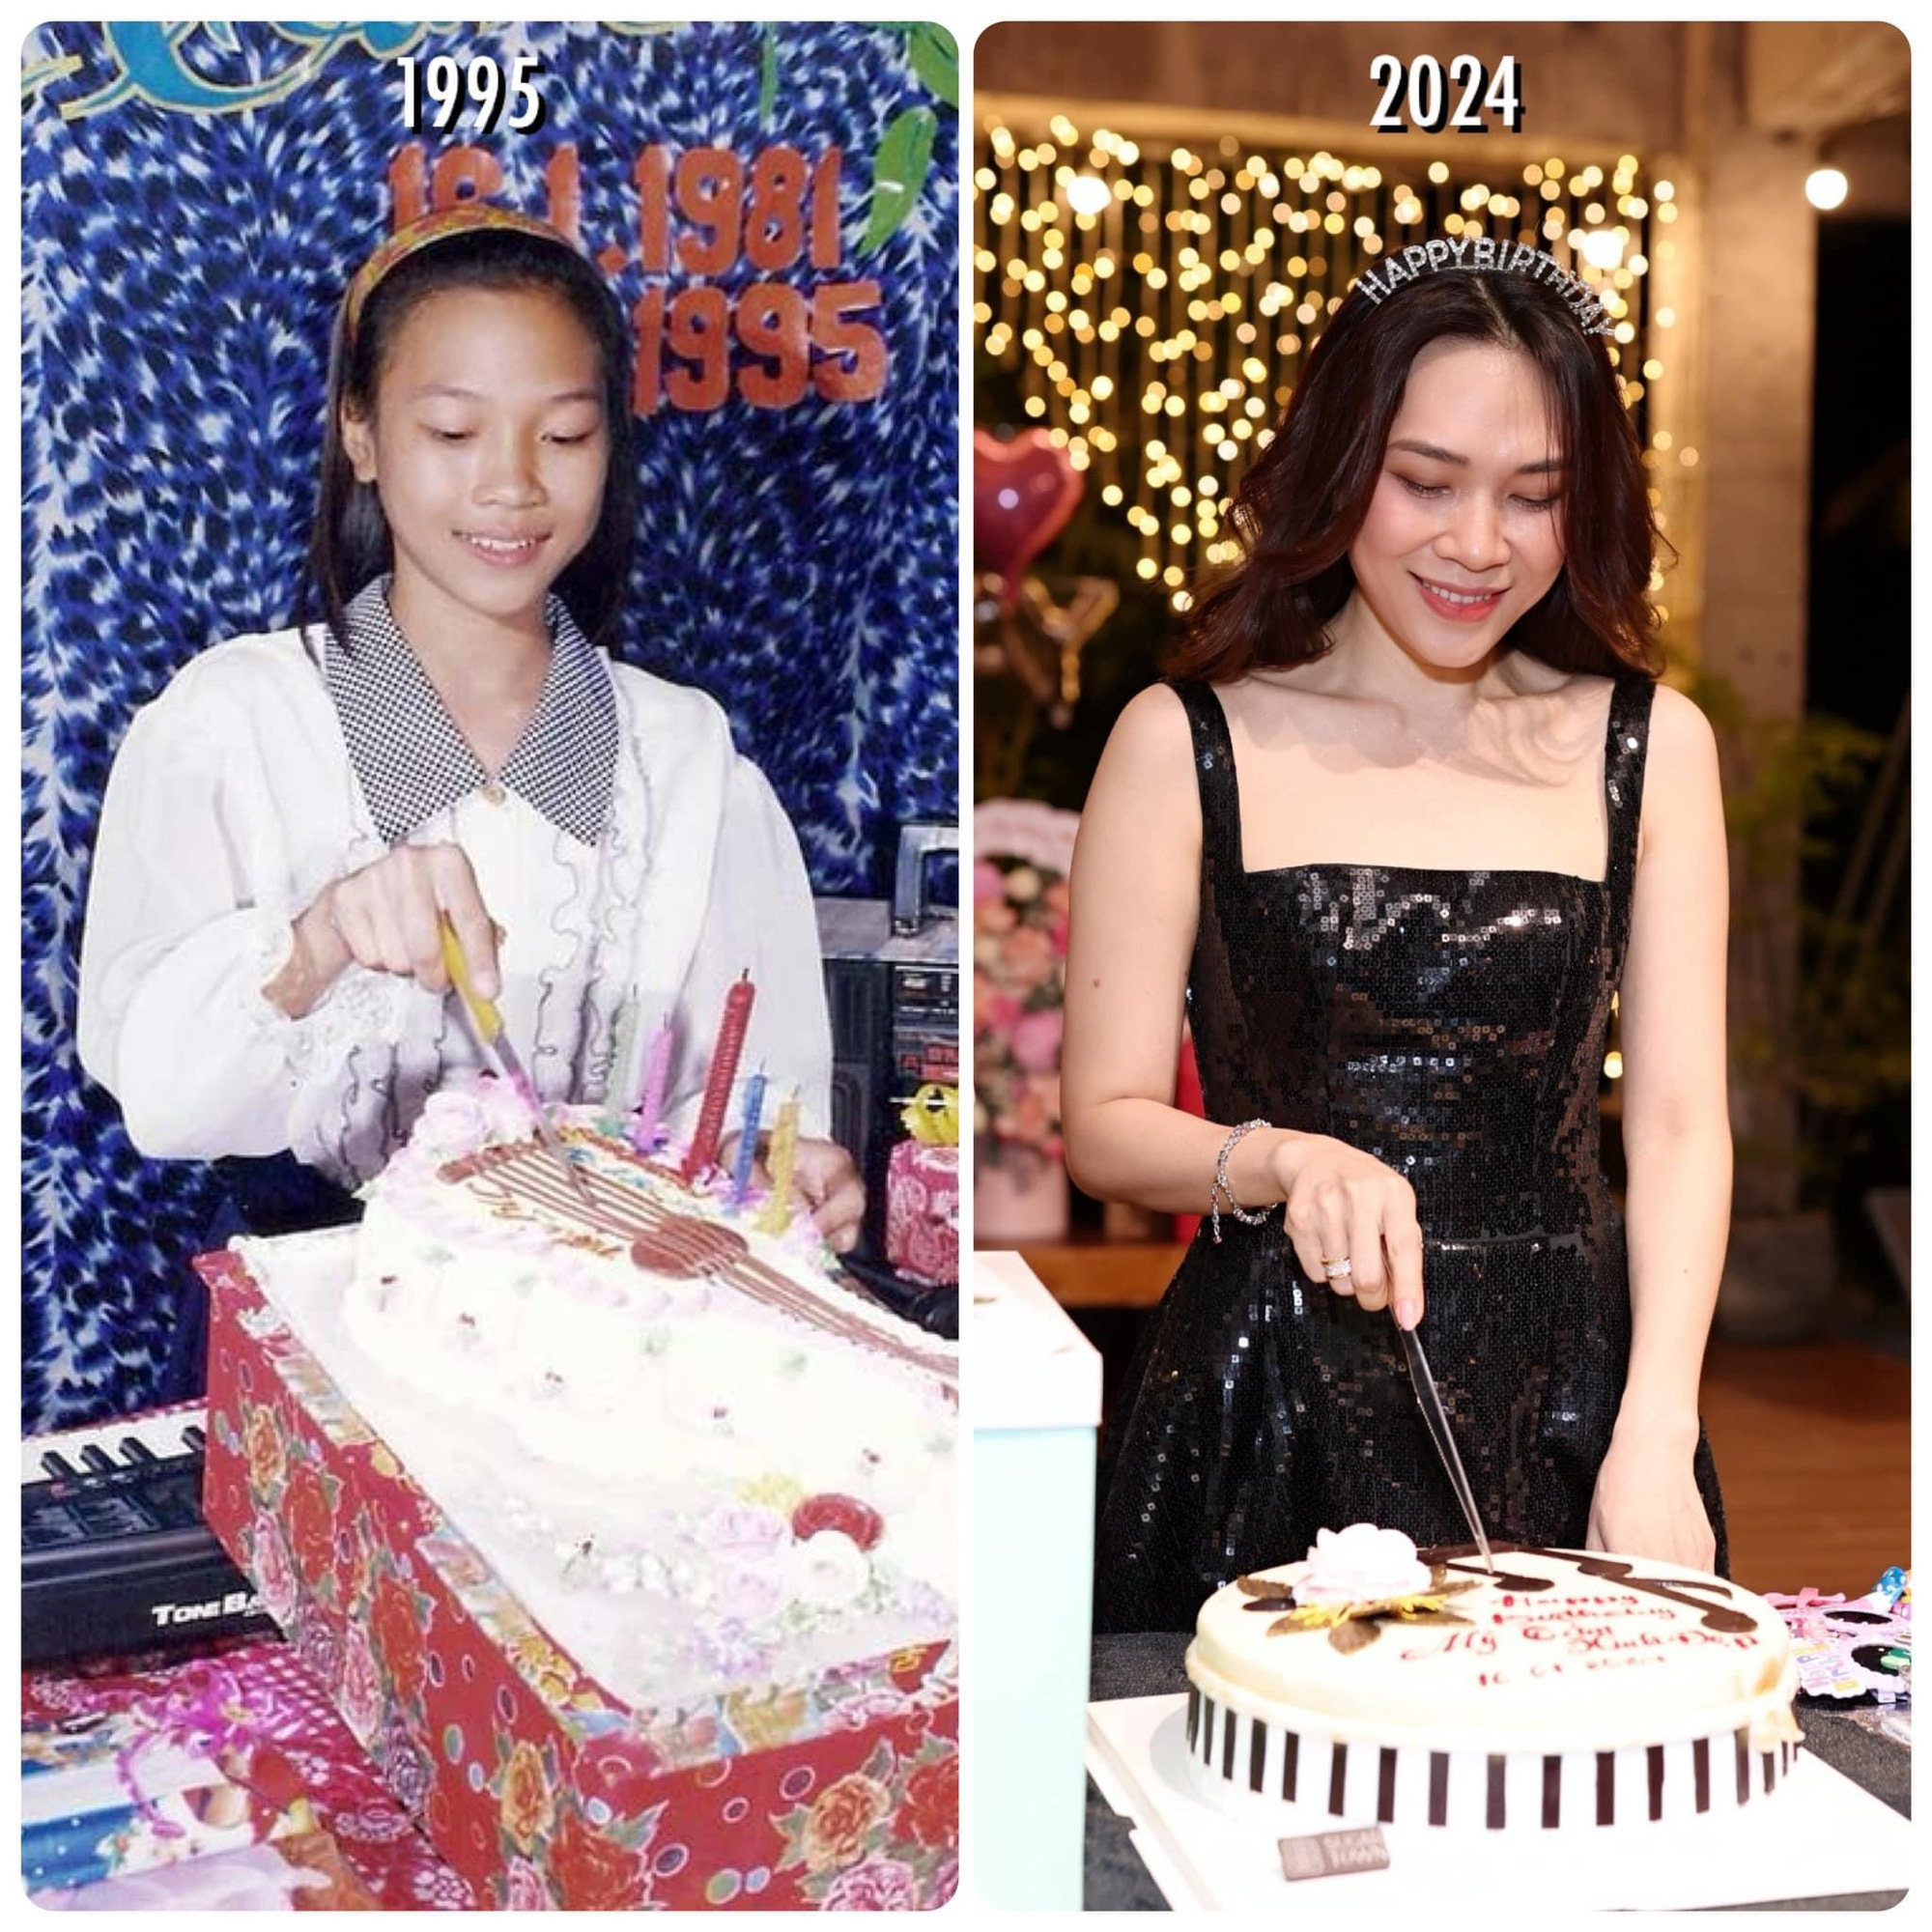 Hình ảnh Mỹ Tâm đón sinh nhật năm 14 tuổi và năm 43 tuổi